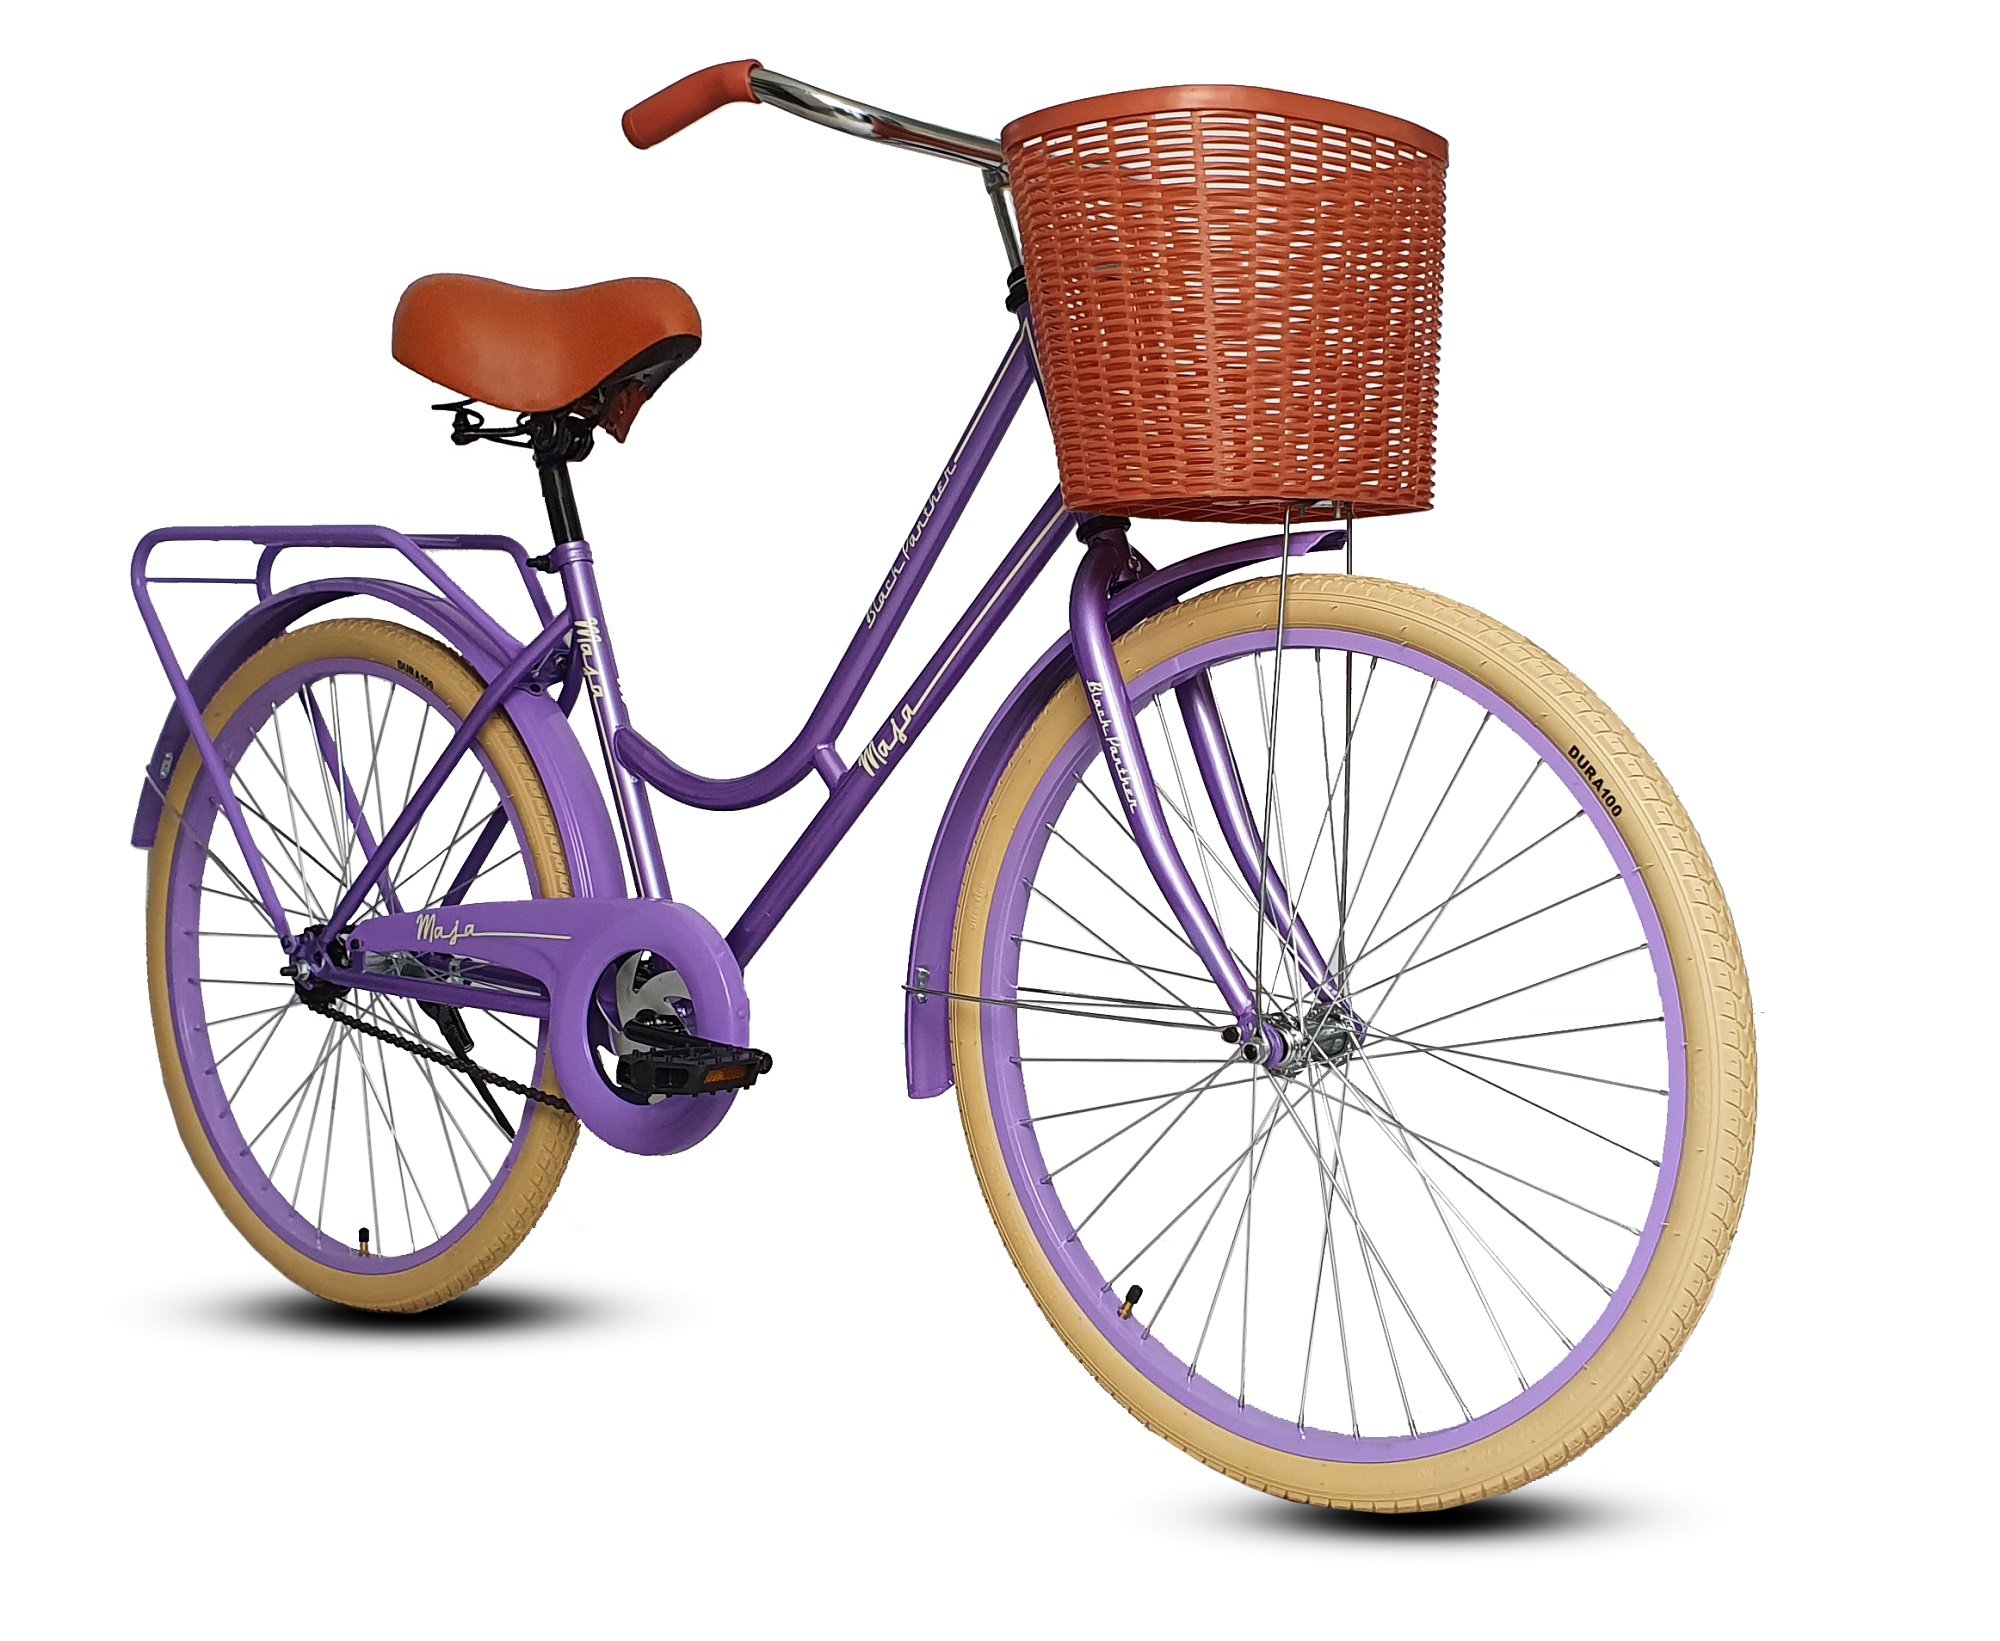 Bicicleta Maja Vintage Clasica Retro Urbana Rodada 24-Morado